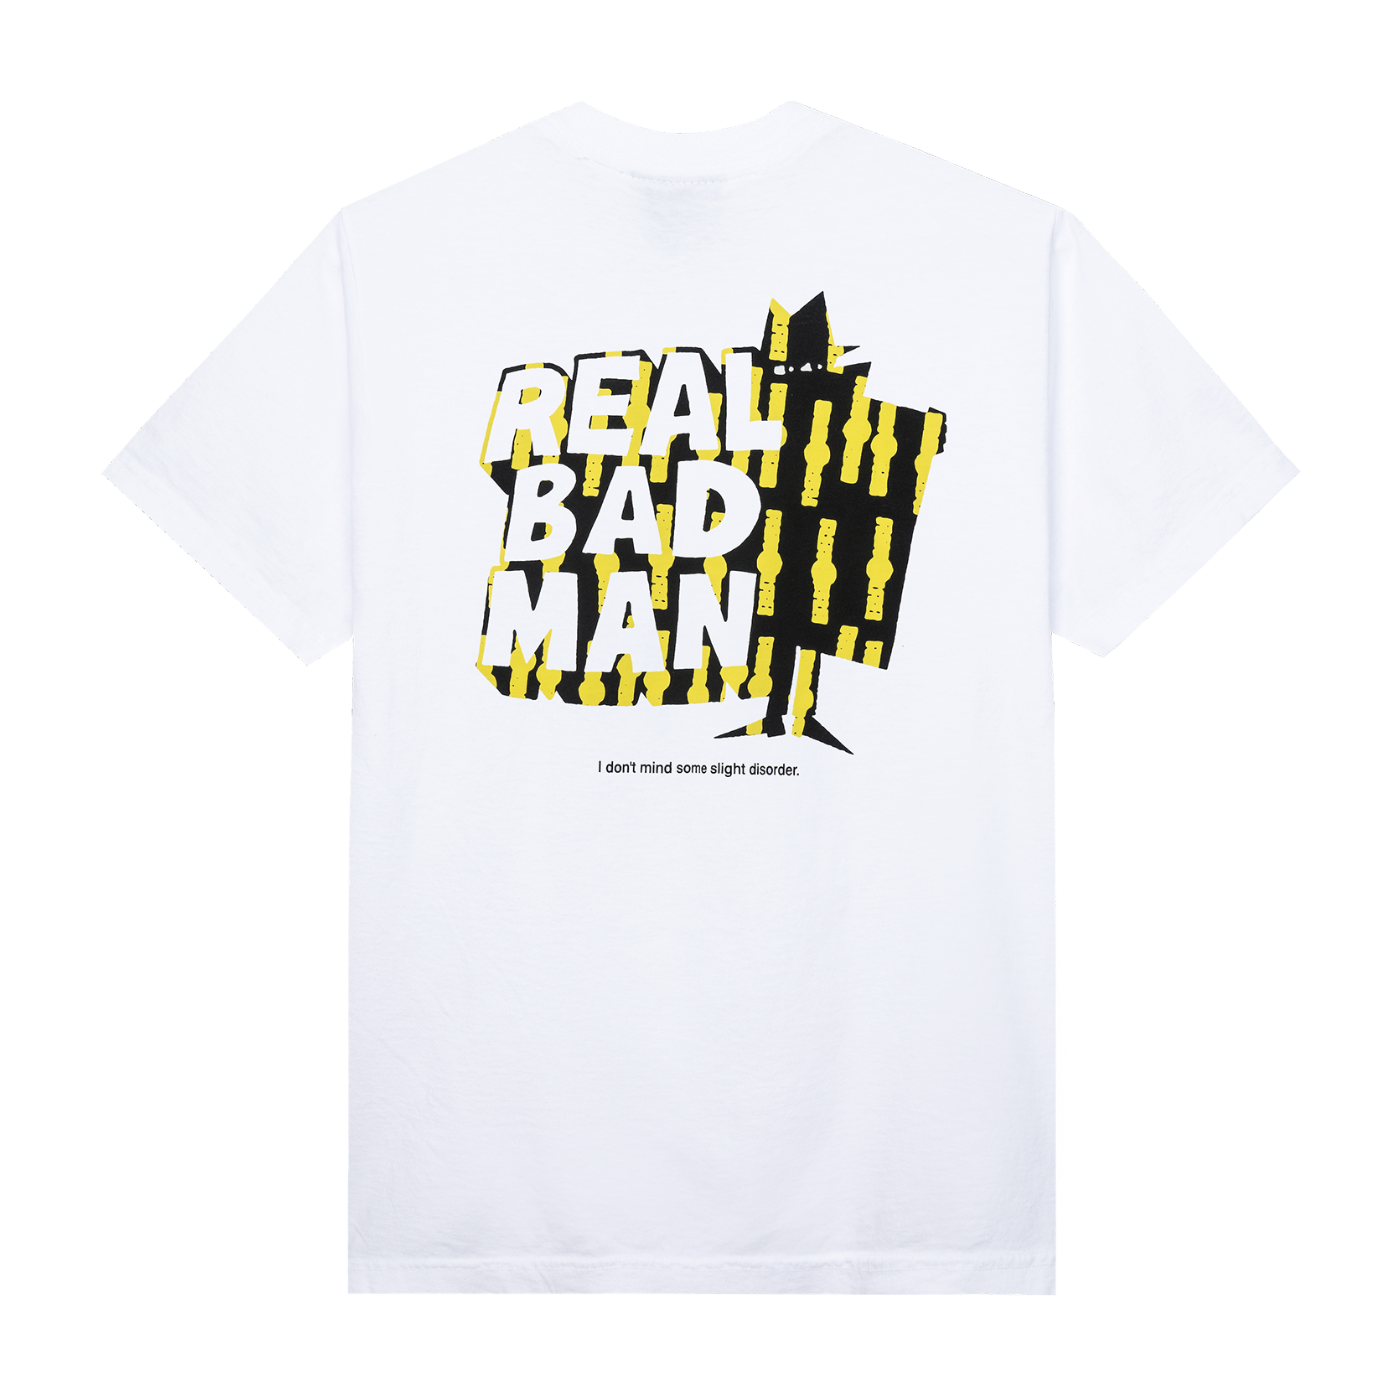 Real Bad Man Logo Vol. 10 T-Shirt